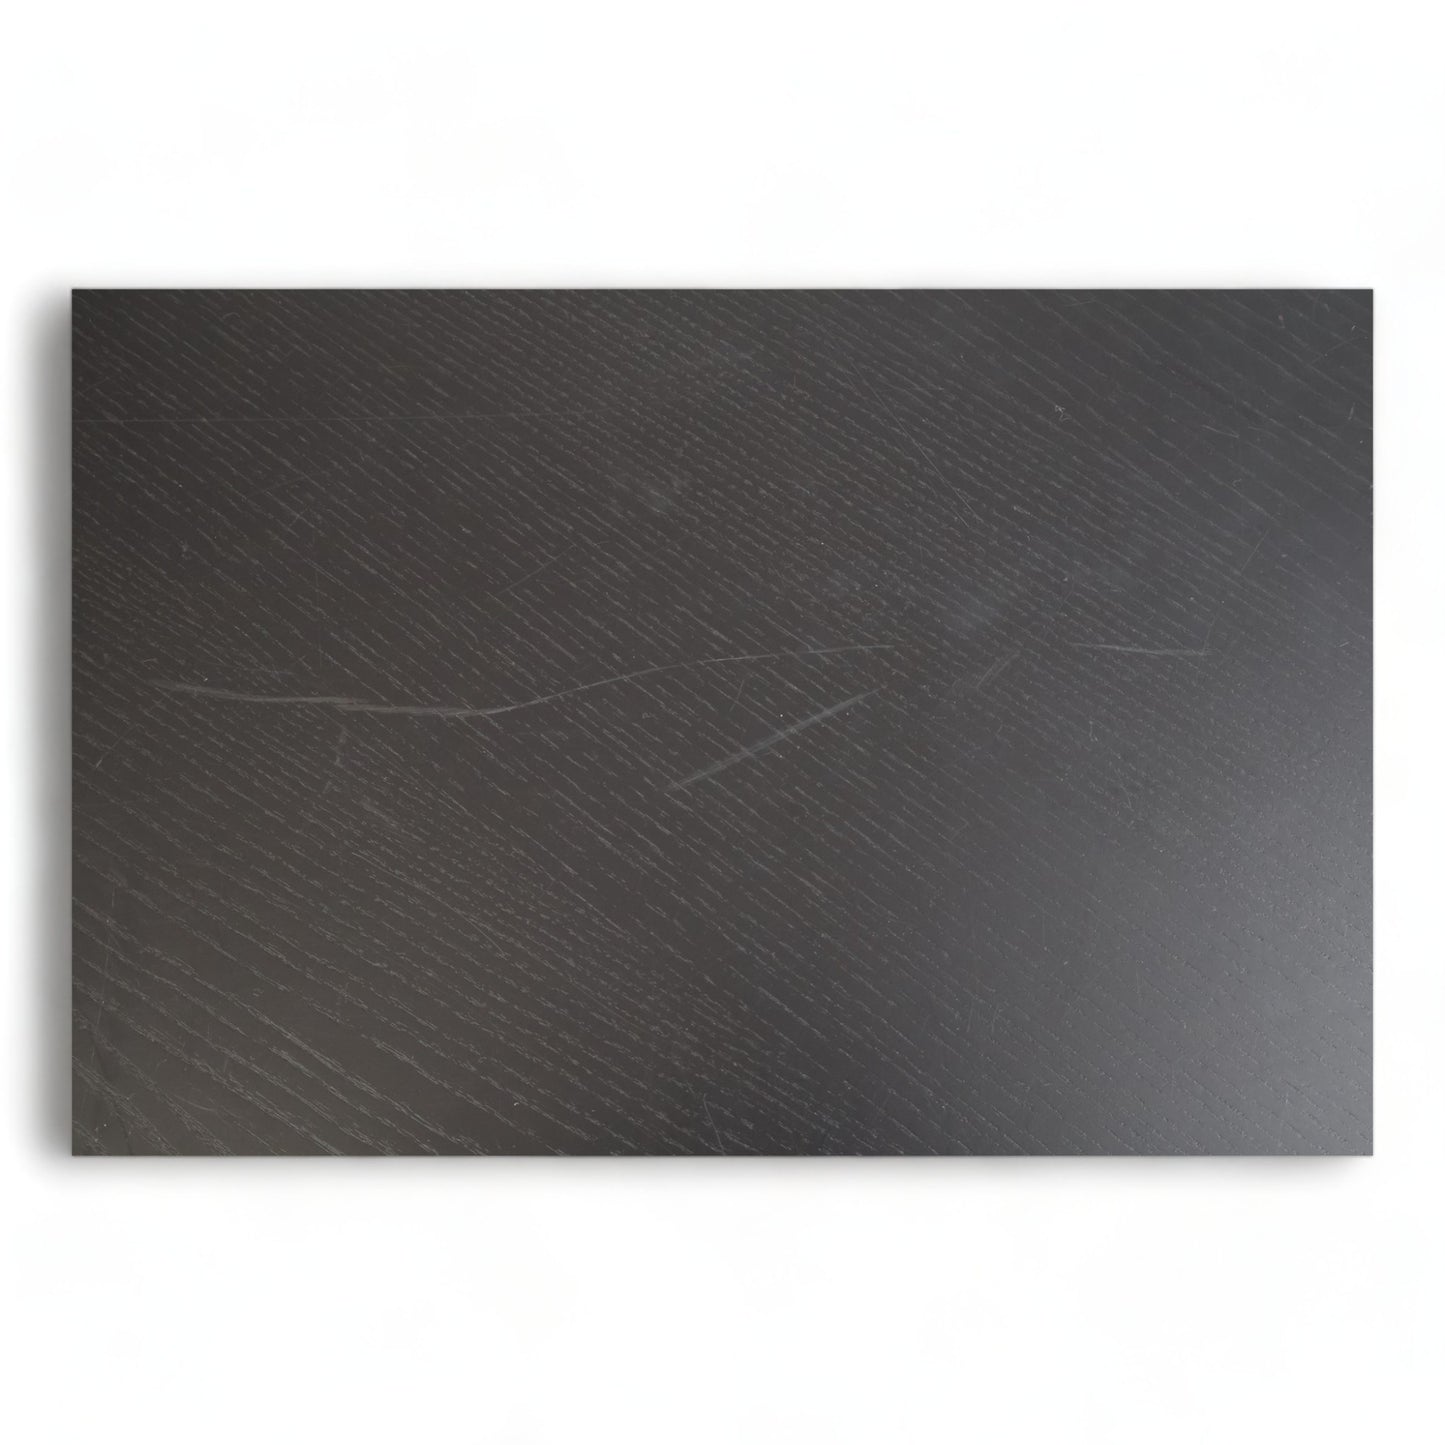 Nyrenset | Liberty spisebord (Ø150) - sort